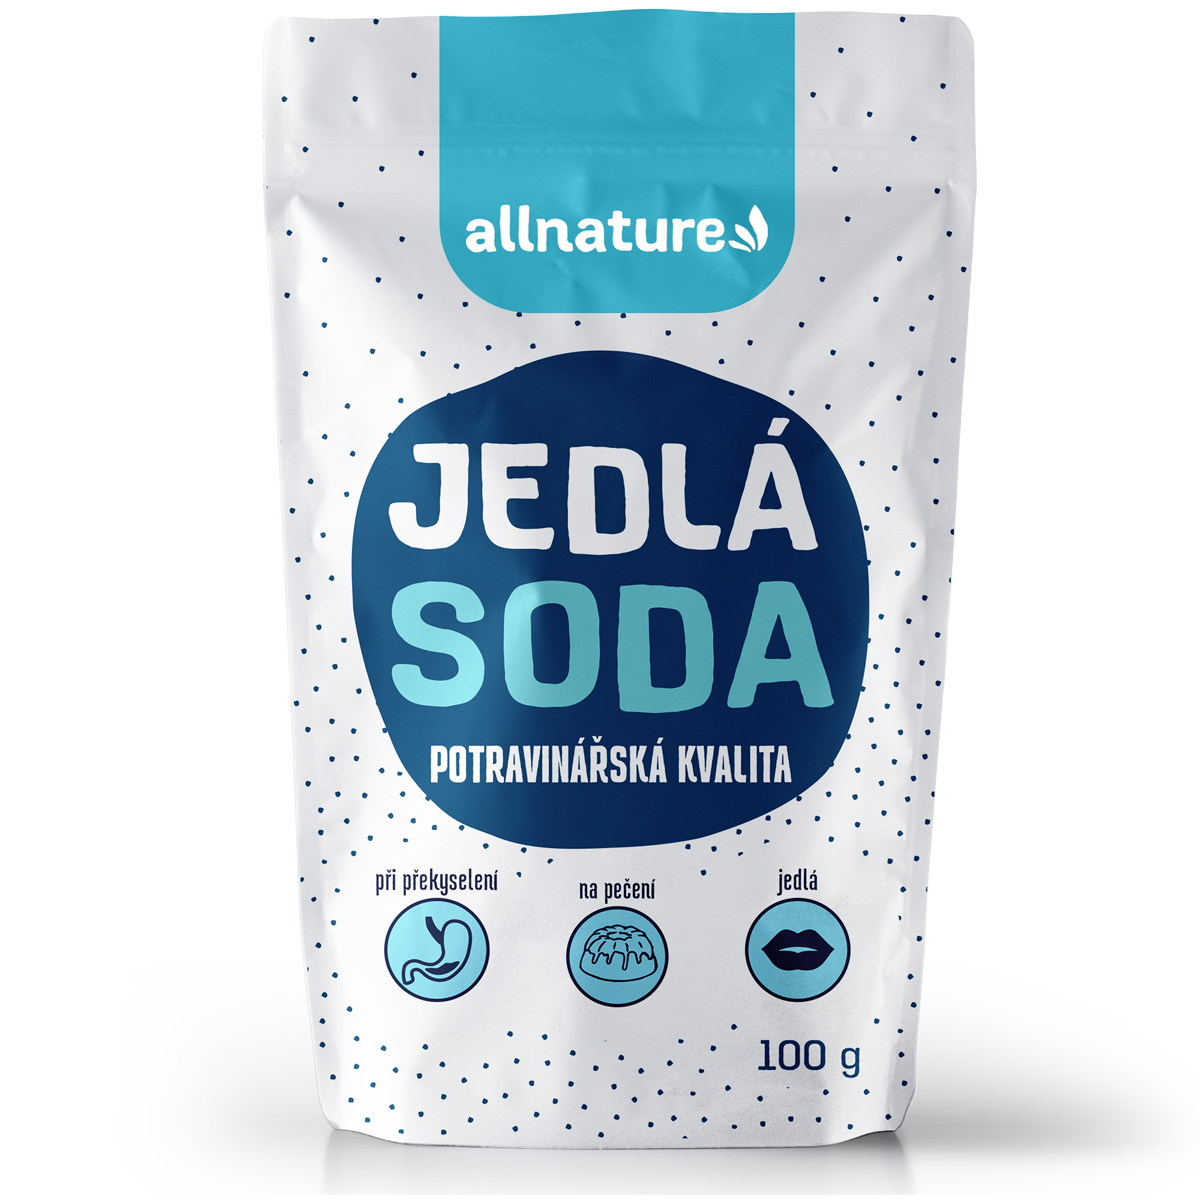 Allnature Jedlá soda - 100 g - potravinářská kvalita